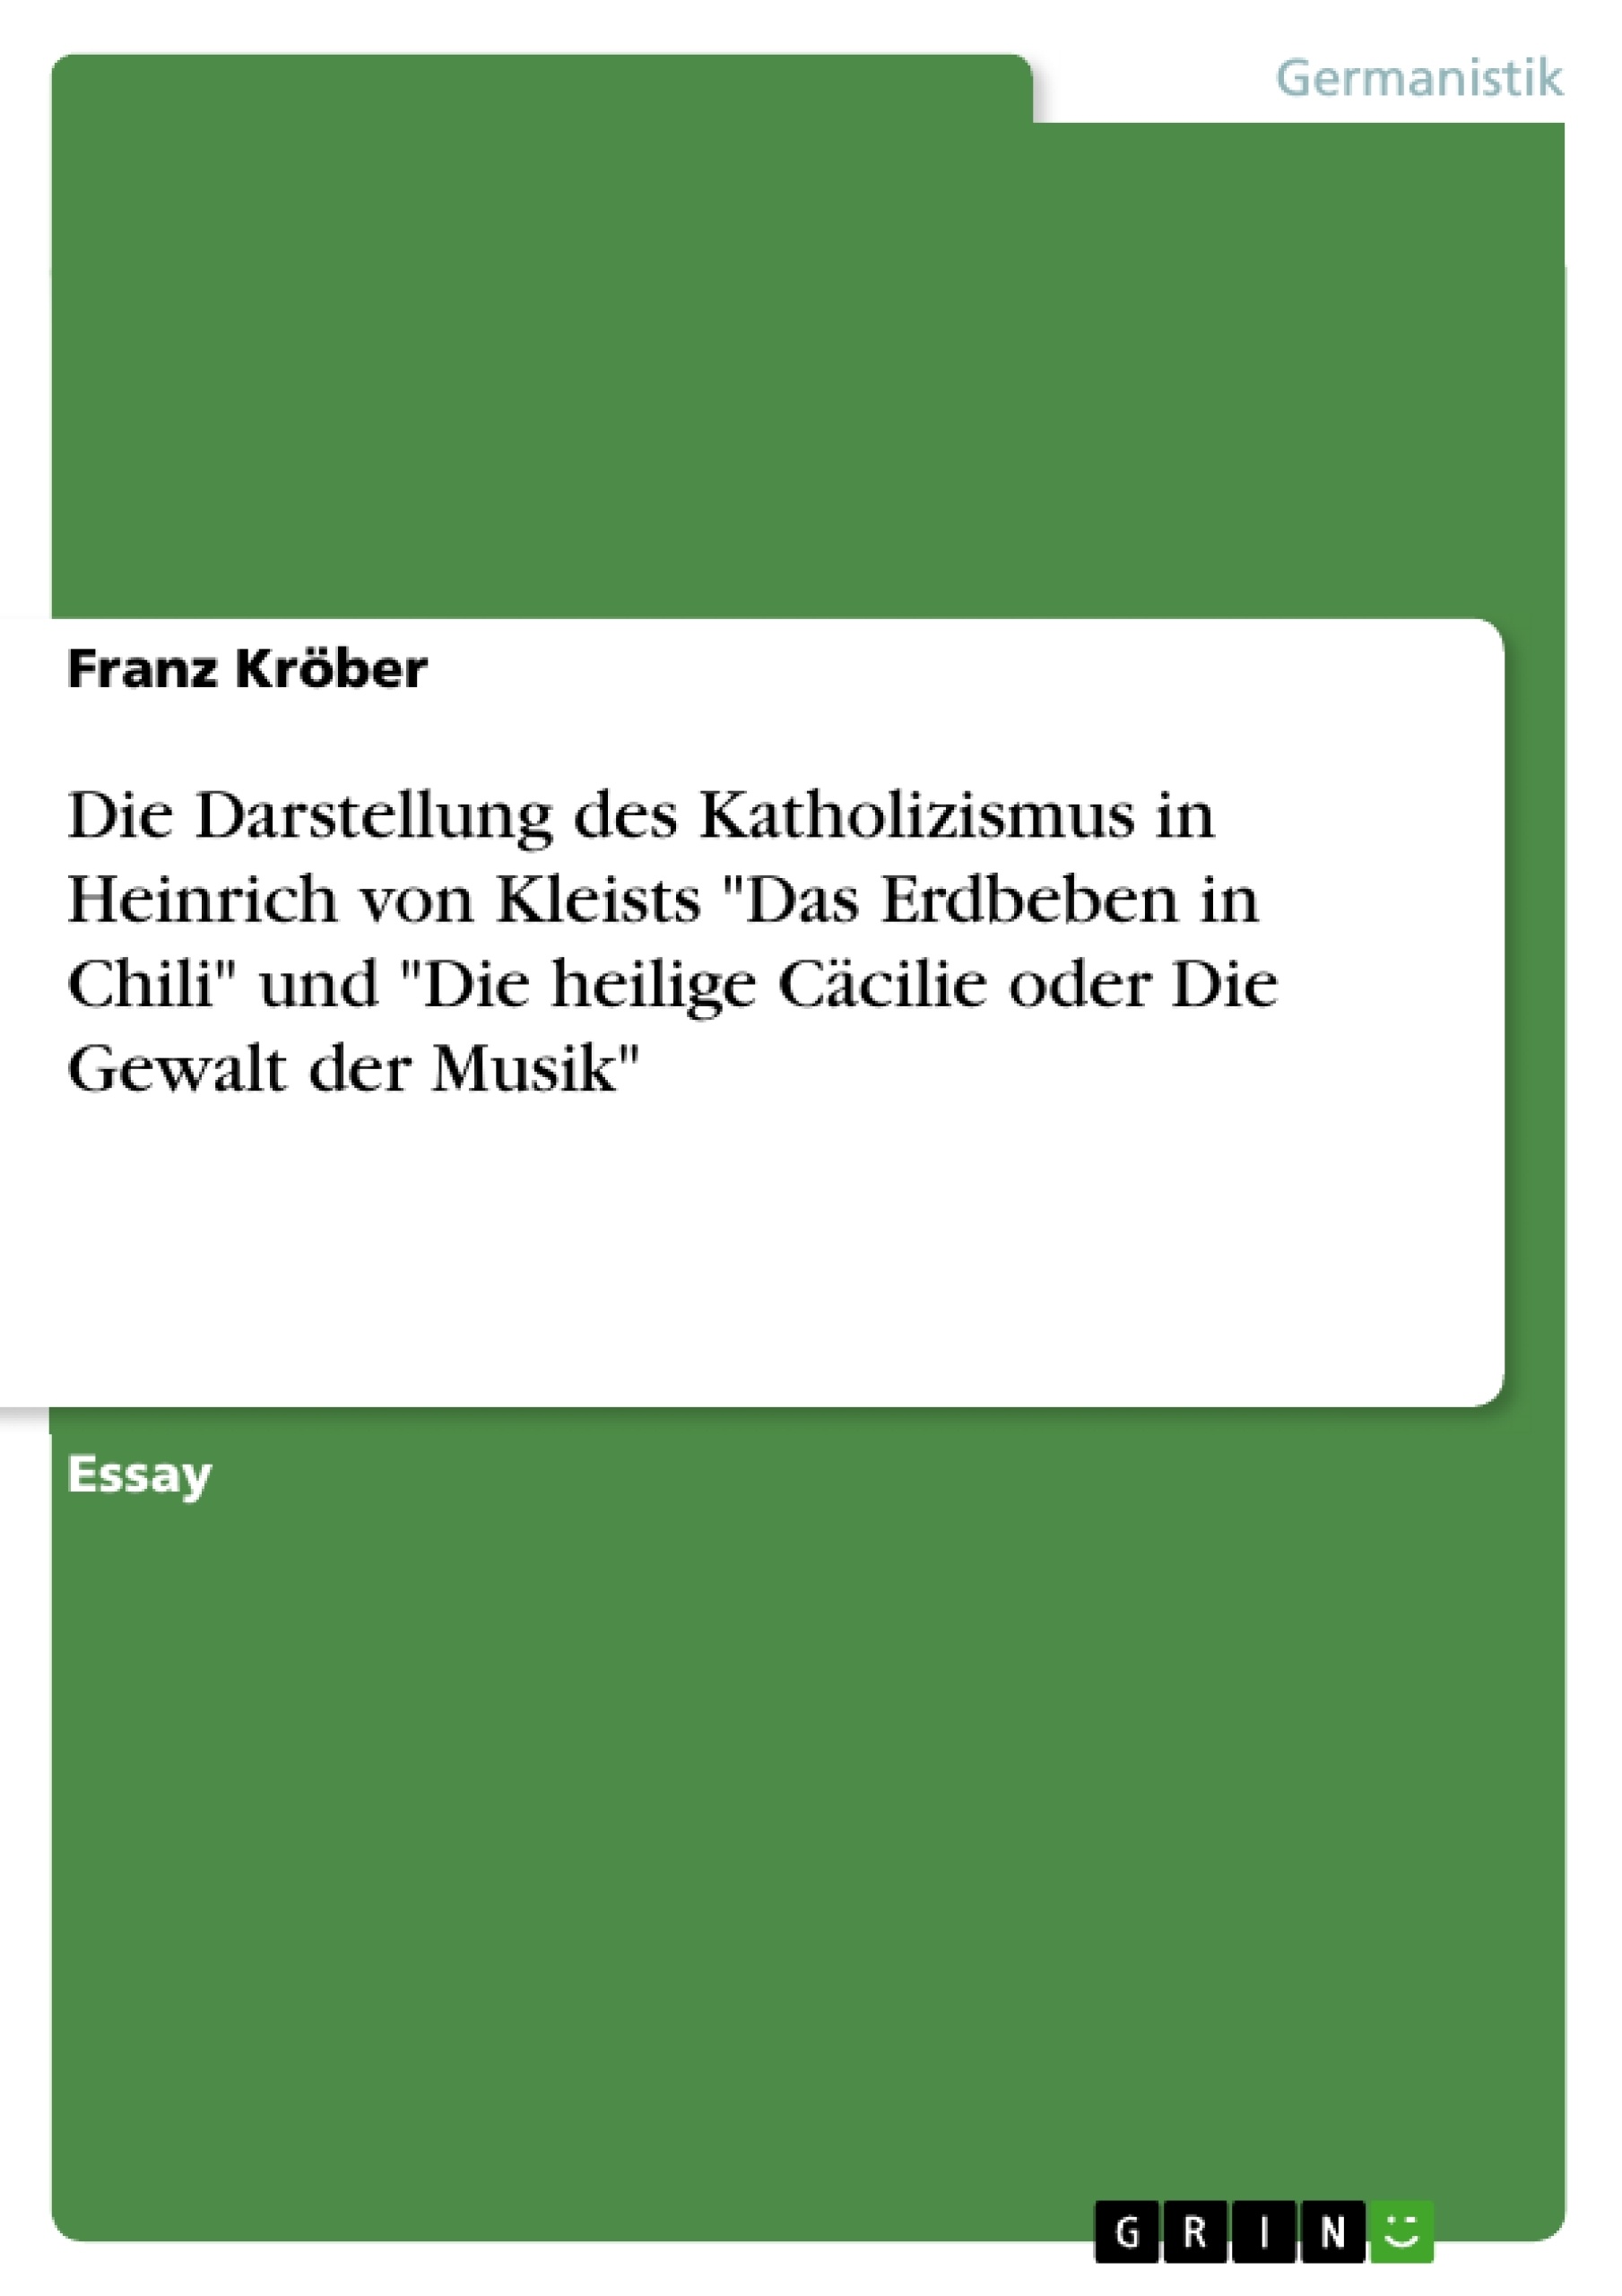 Title: Die Darstellung des Katholizismus in Heinrich von Kleists "Das Erdbeben in Chili" und "Die heilige Cäcilie oder Die Gewalt der Musik"